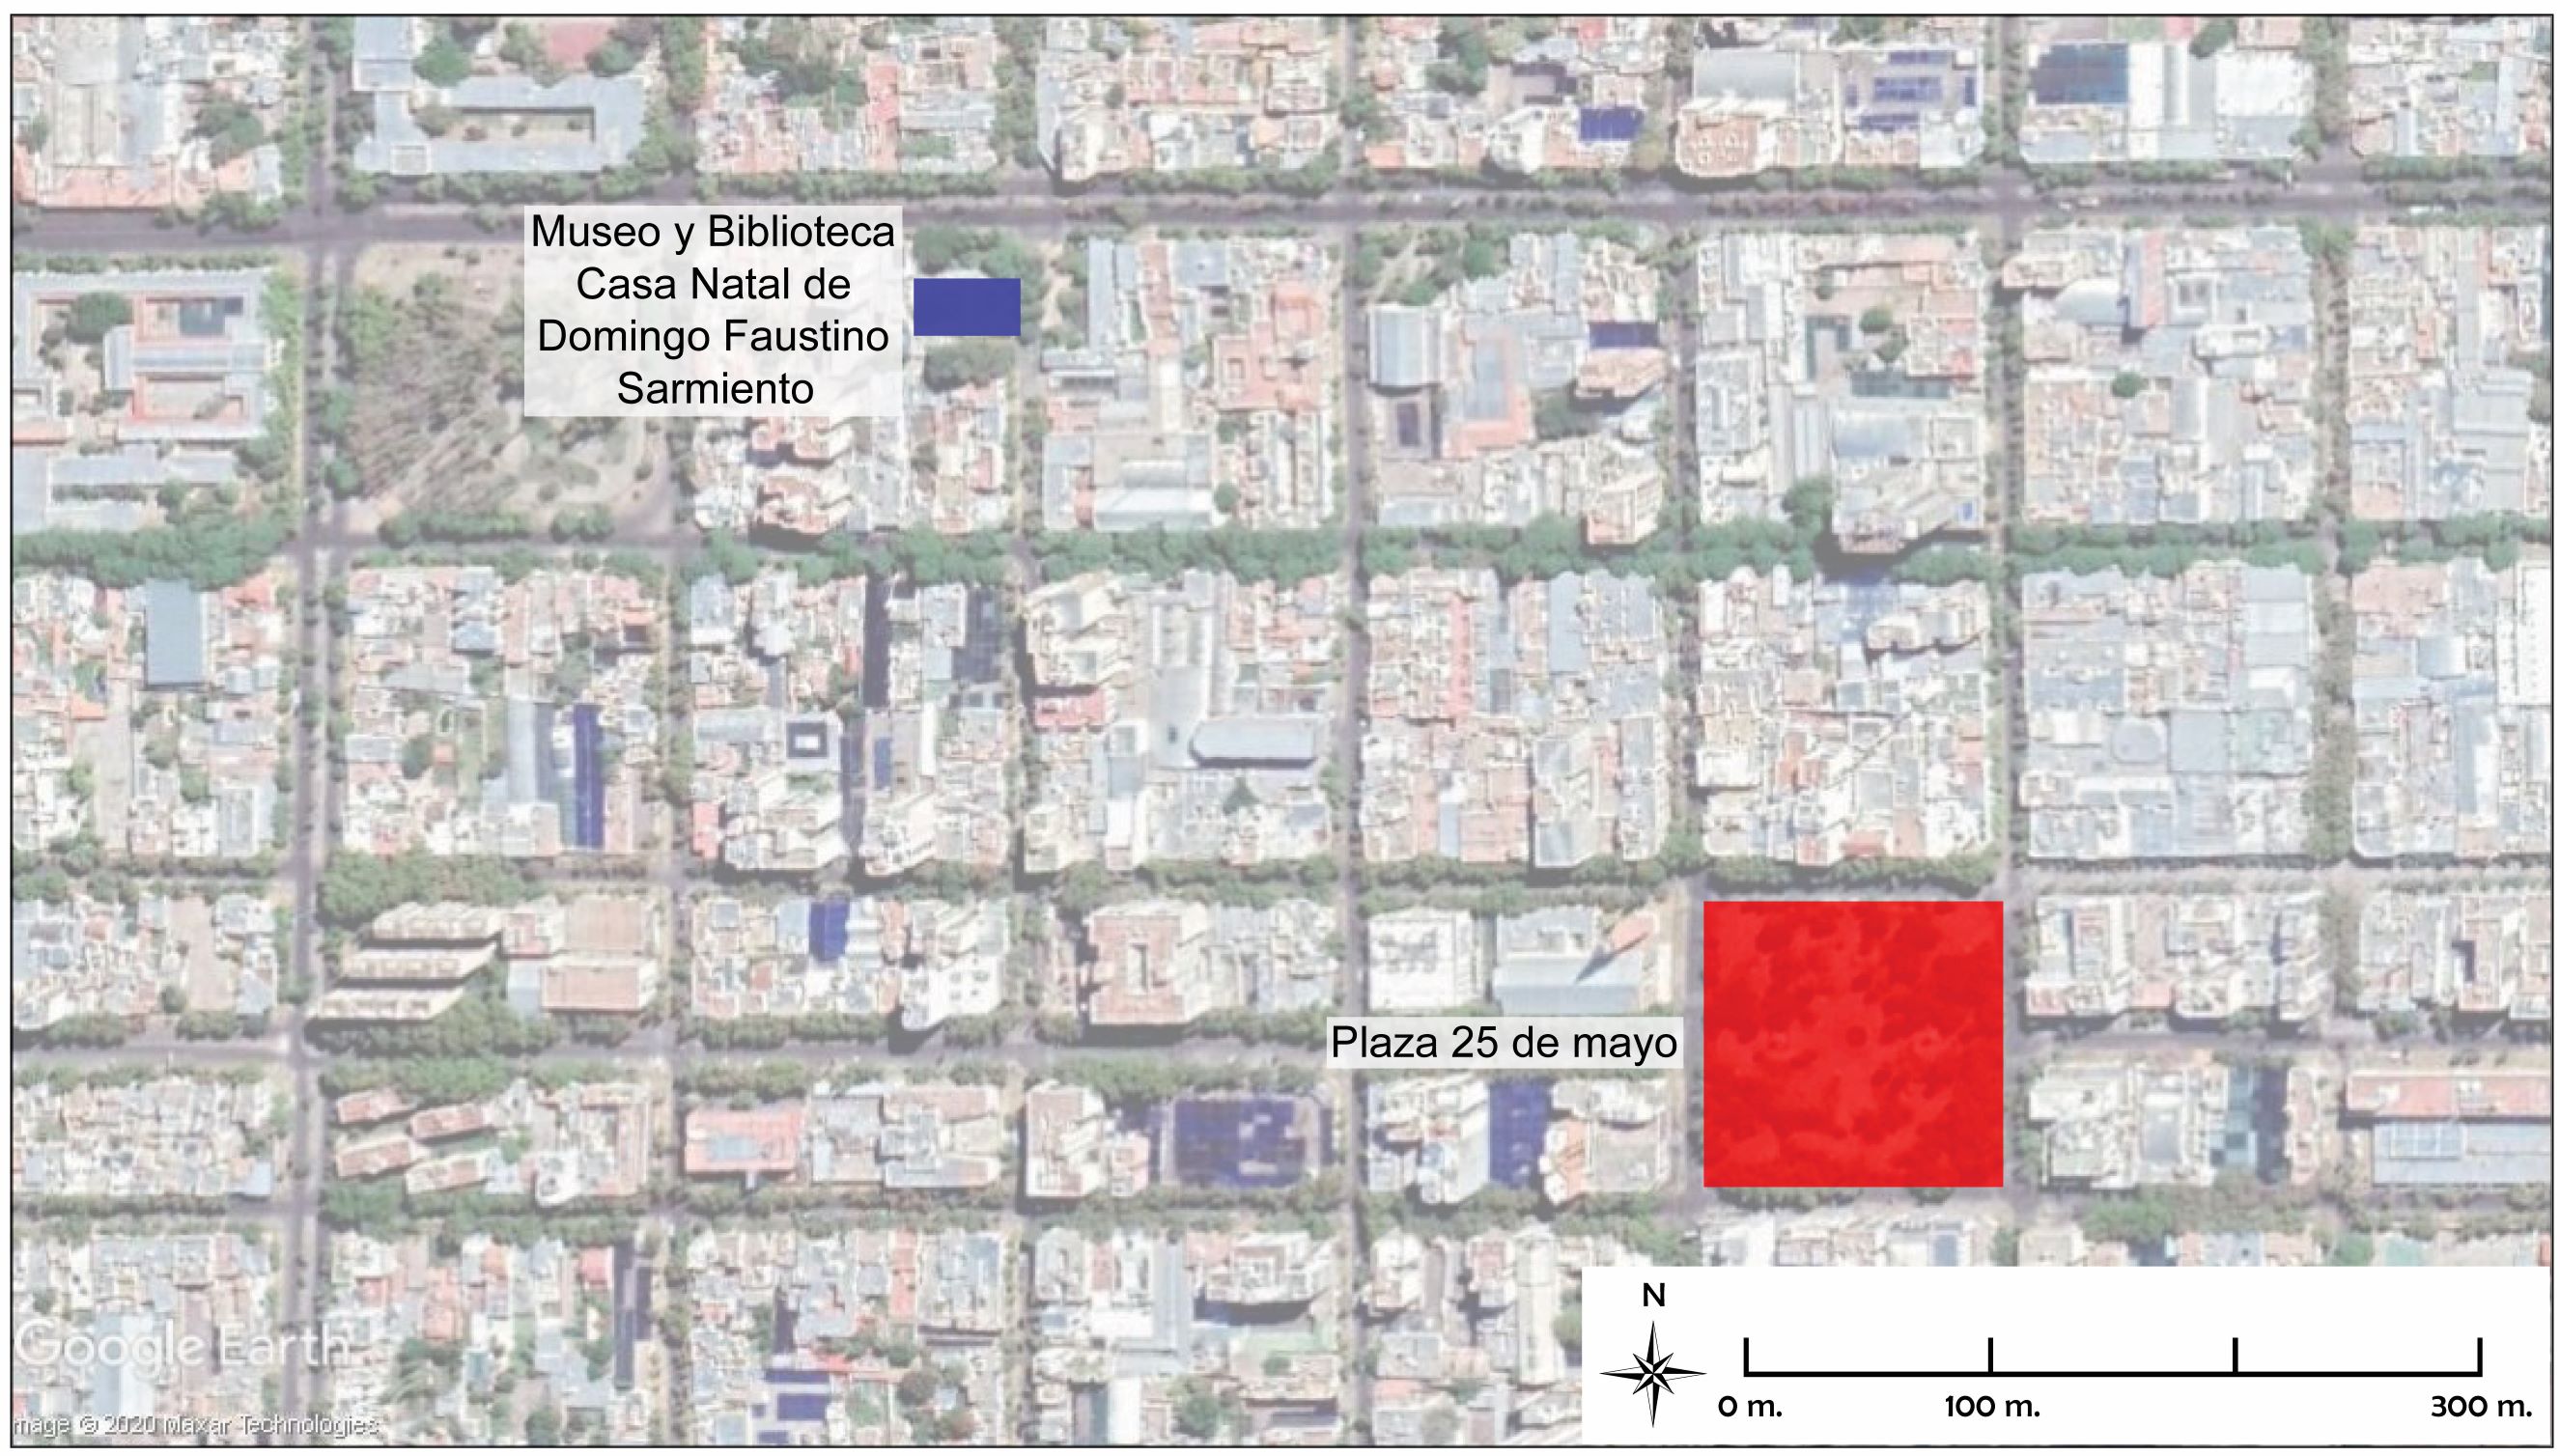 Detalle del caso urbano actual de San Juan con ubicación del
sitio en azul y en rojo la Plaza 25 de mayo (antigua plaza principal
de la ciudad).